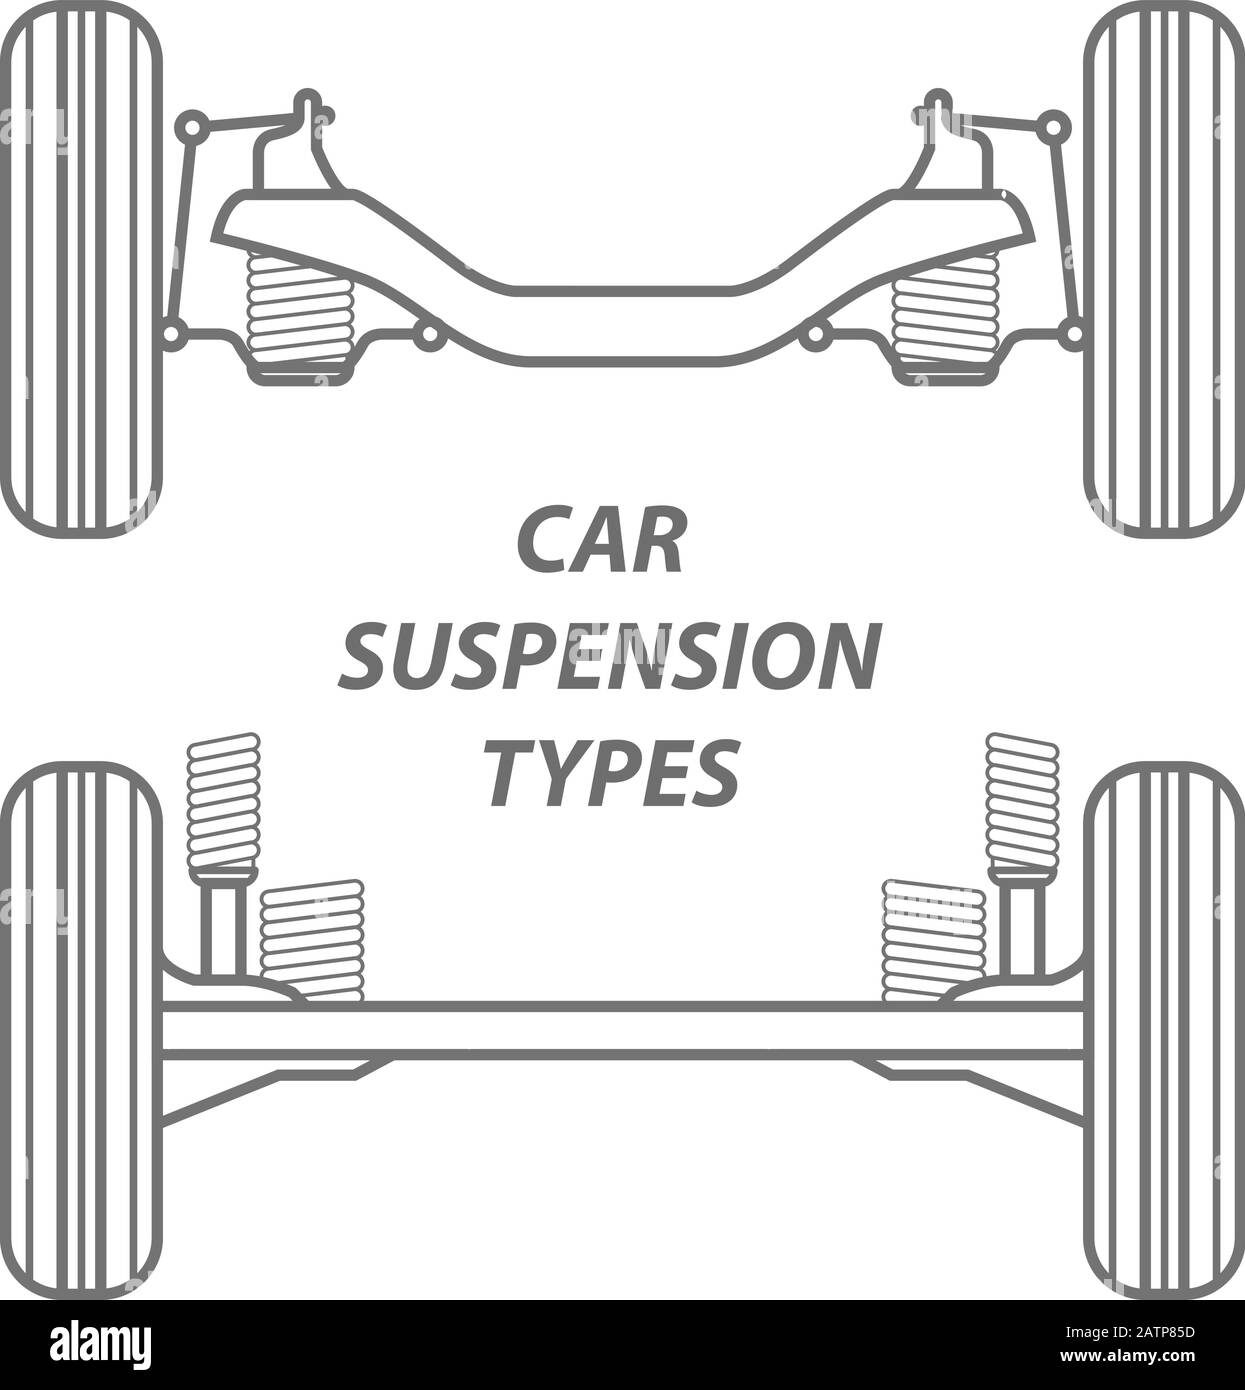 Sospensione della ruota posteriore del veicolo - traversa dell'assale pieno e sospensione indipendente posteriore, principio di funzionamento dell'assale posteriore Illustrazione Vettoriale